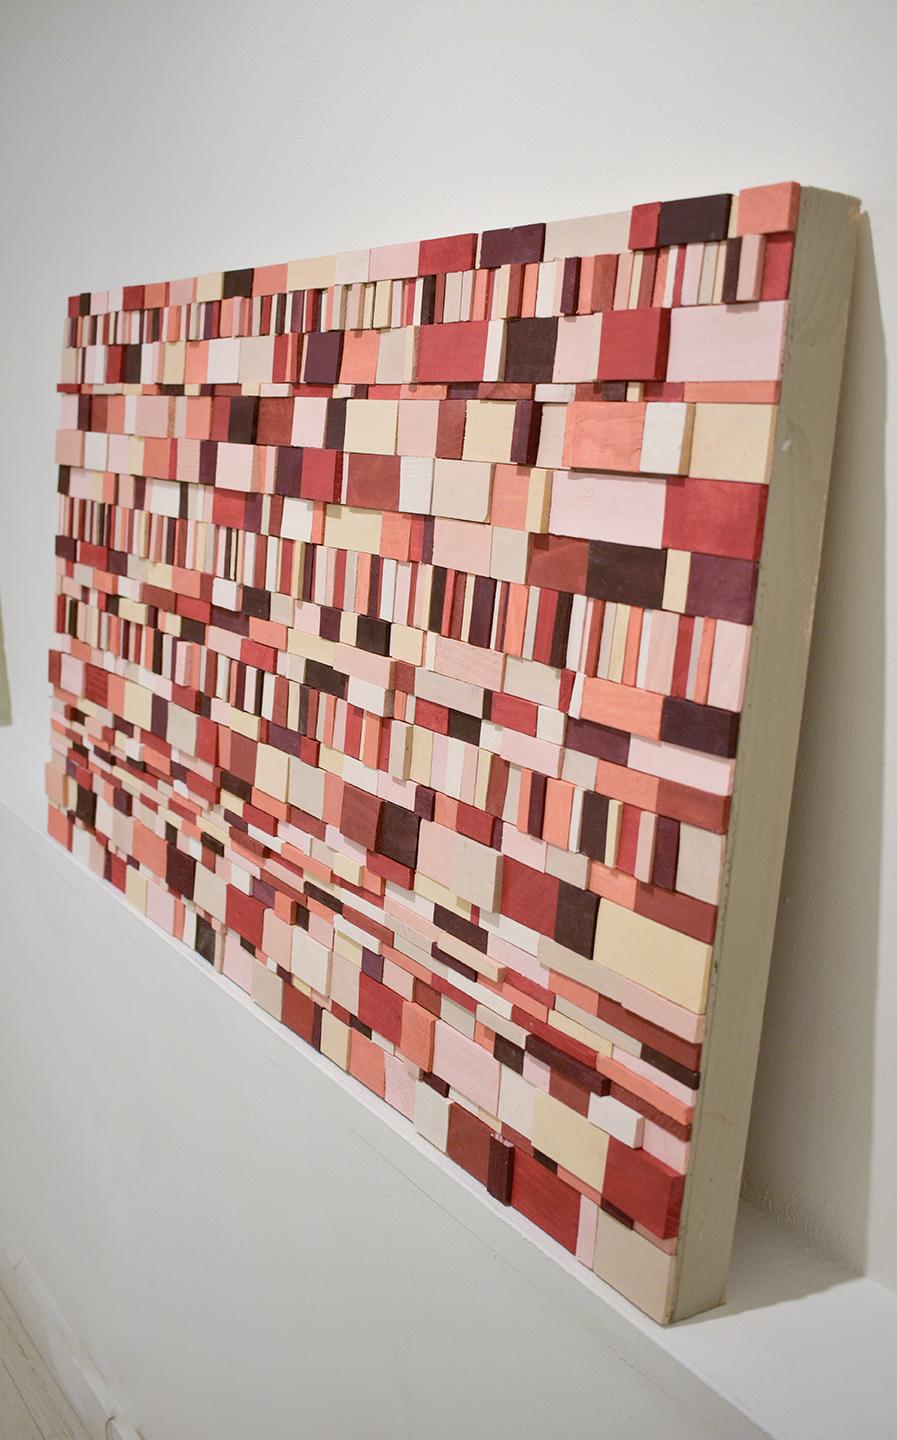 Piquant: Abstrakte geometrische 3D-Holz-Wandskulptur in Rot, Rosa, Pfirsich, Maroon – Sculpture von Stephen Walling